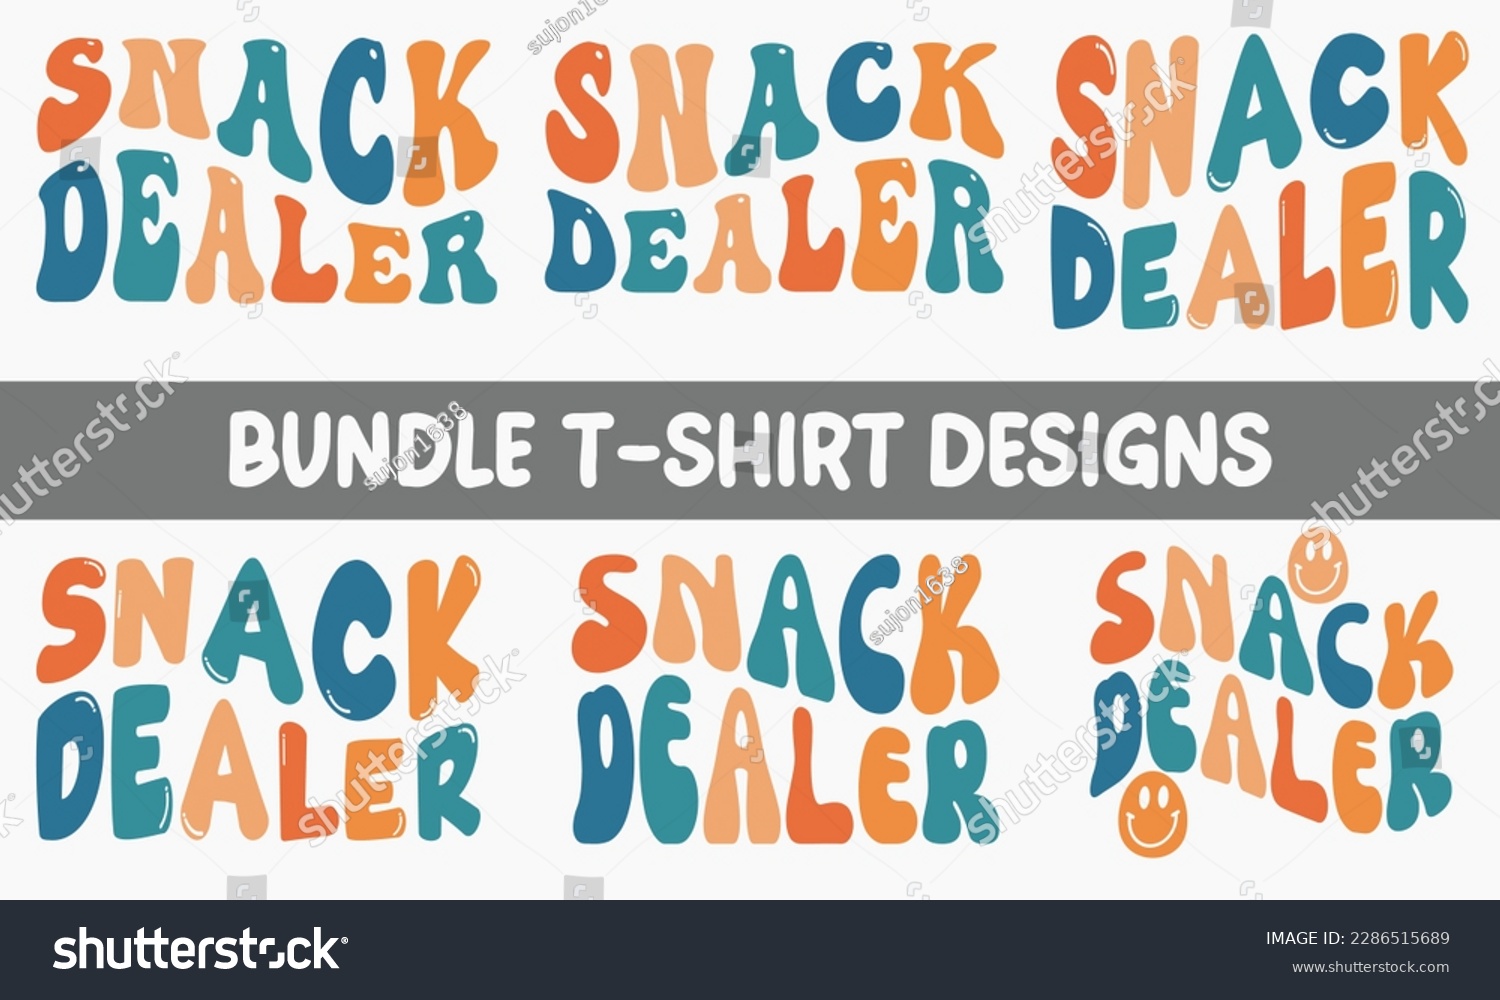 SVG of Snack Dealer retro wavy SVG bundle T-shirt designs svg